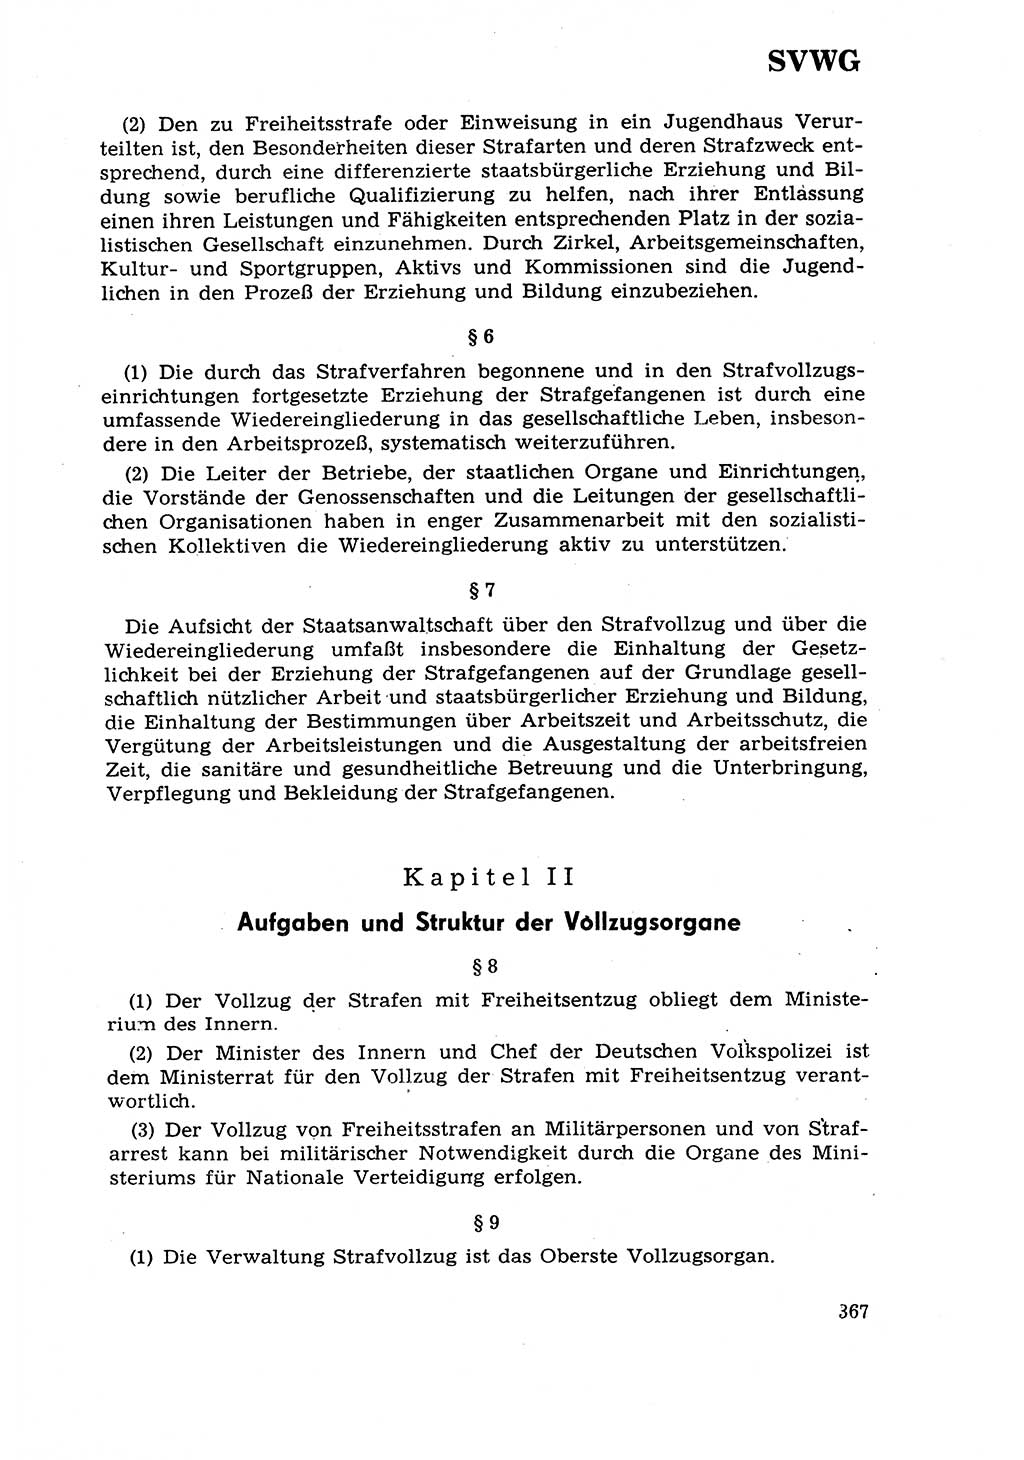 Strafrecht [Deutsche Demokratische Republik (DDR)] 1968, Seite 367 (Strafr. DDR 1968, S. 367)